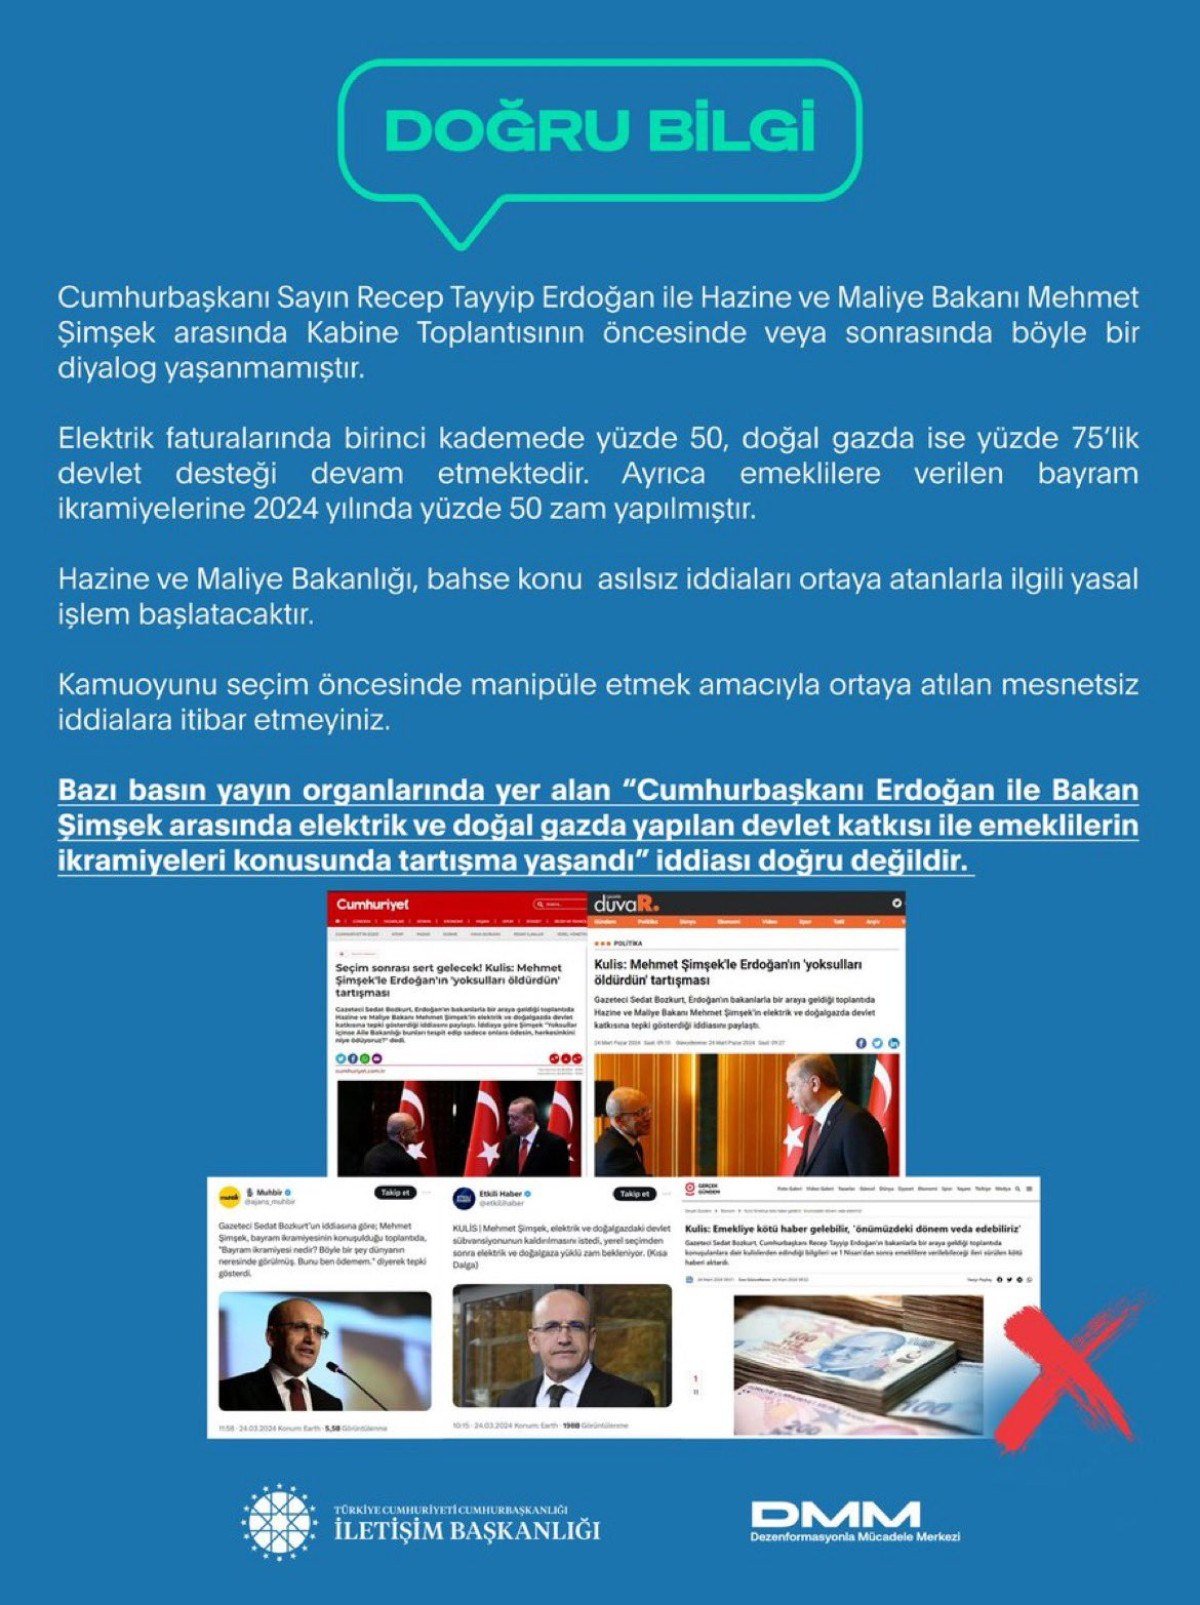 1711287481 613 Cumhurbaskani Erdogan ile Bakan Simsek arasinda tartisma yasandigi iddialari yalanlandi